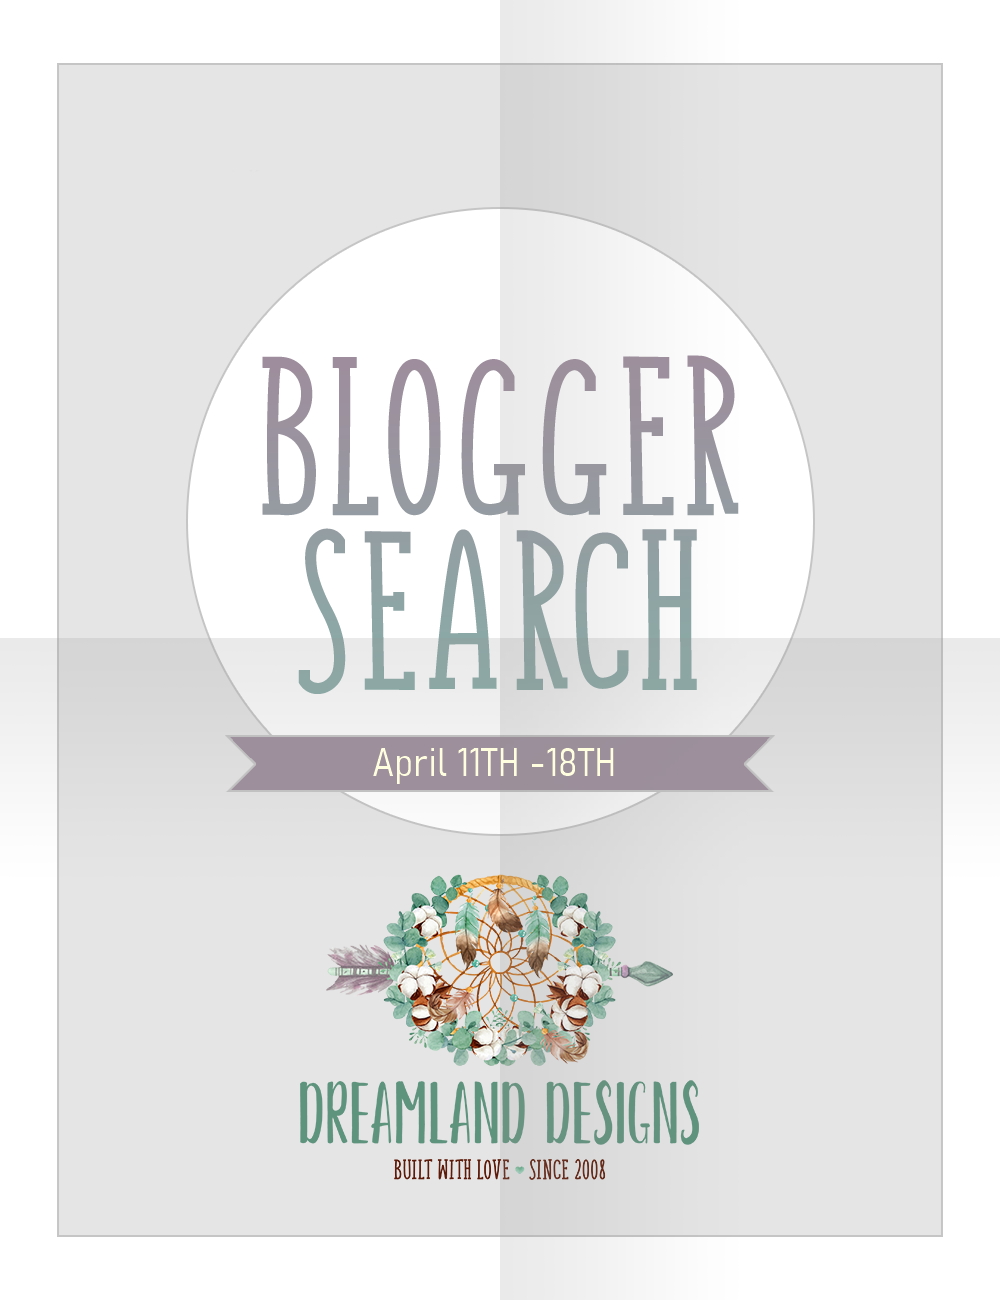 Dreamland Designs – Blogger search